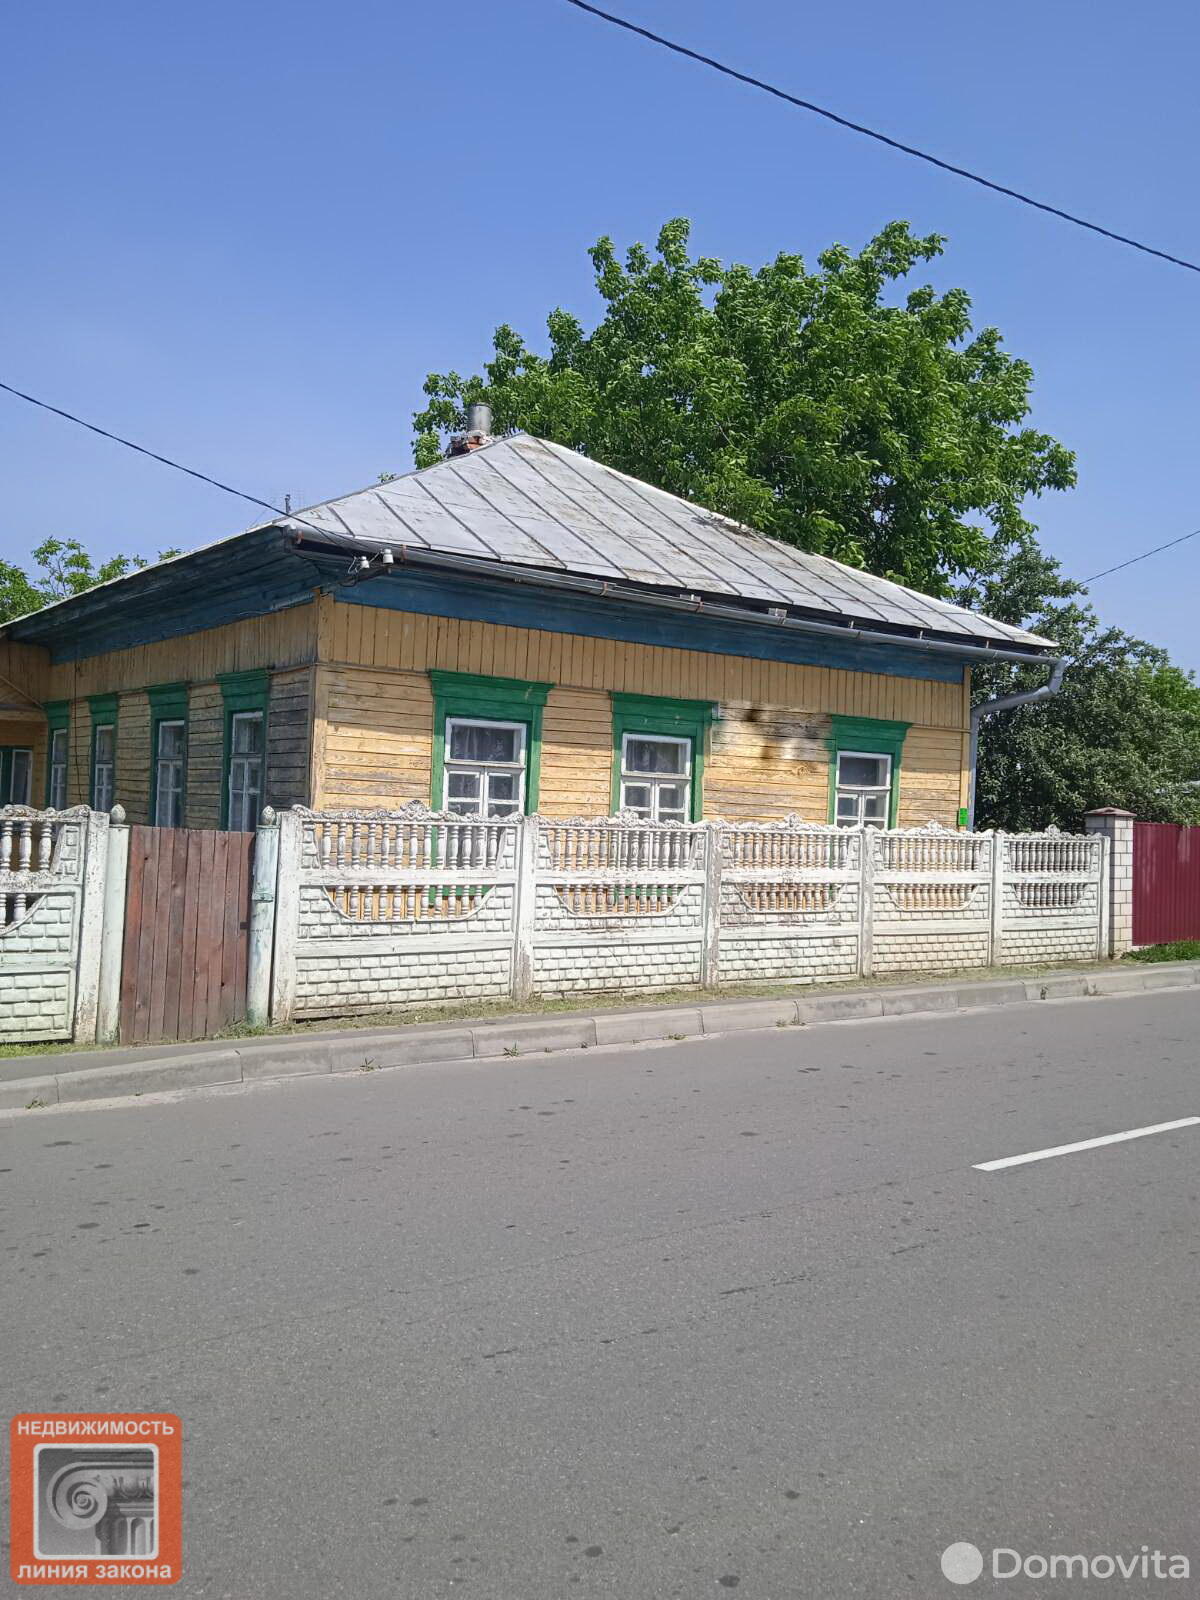 Продажа 1-этажного дома в Петрикове, Гомельская область ул. Ленинская, 14500USD - фото 1